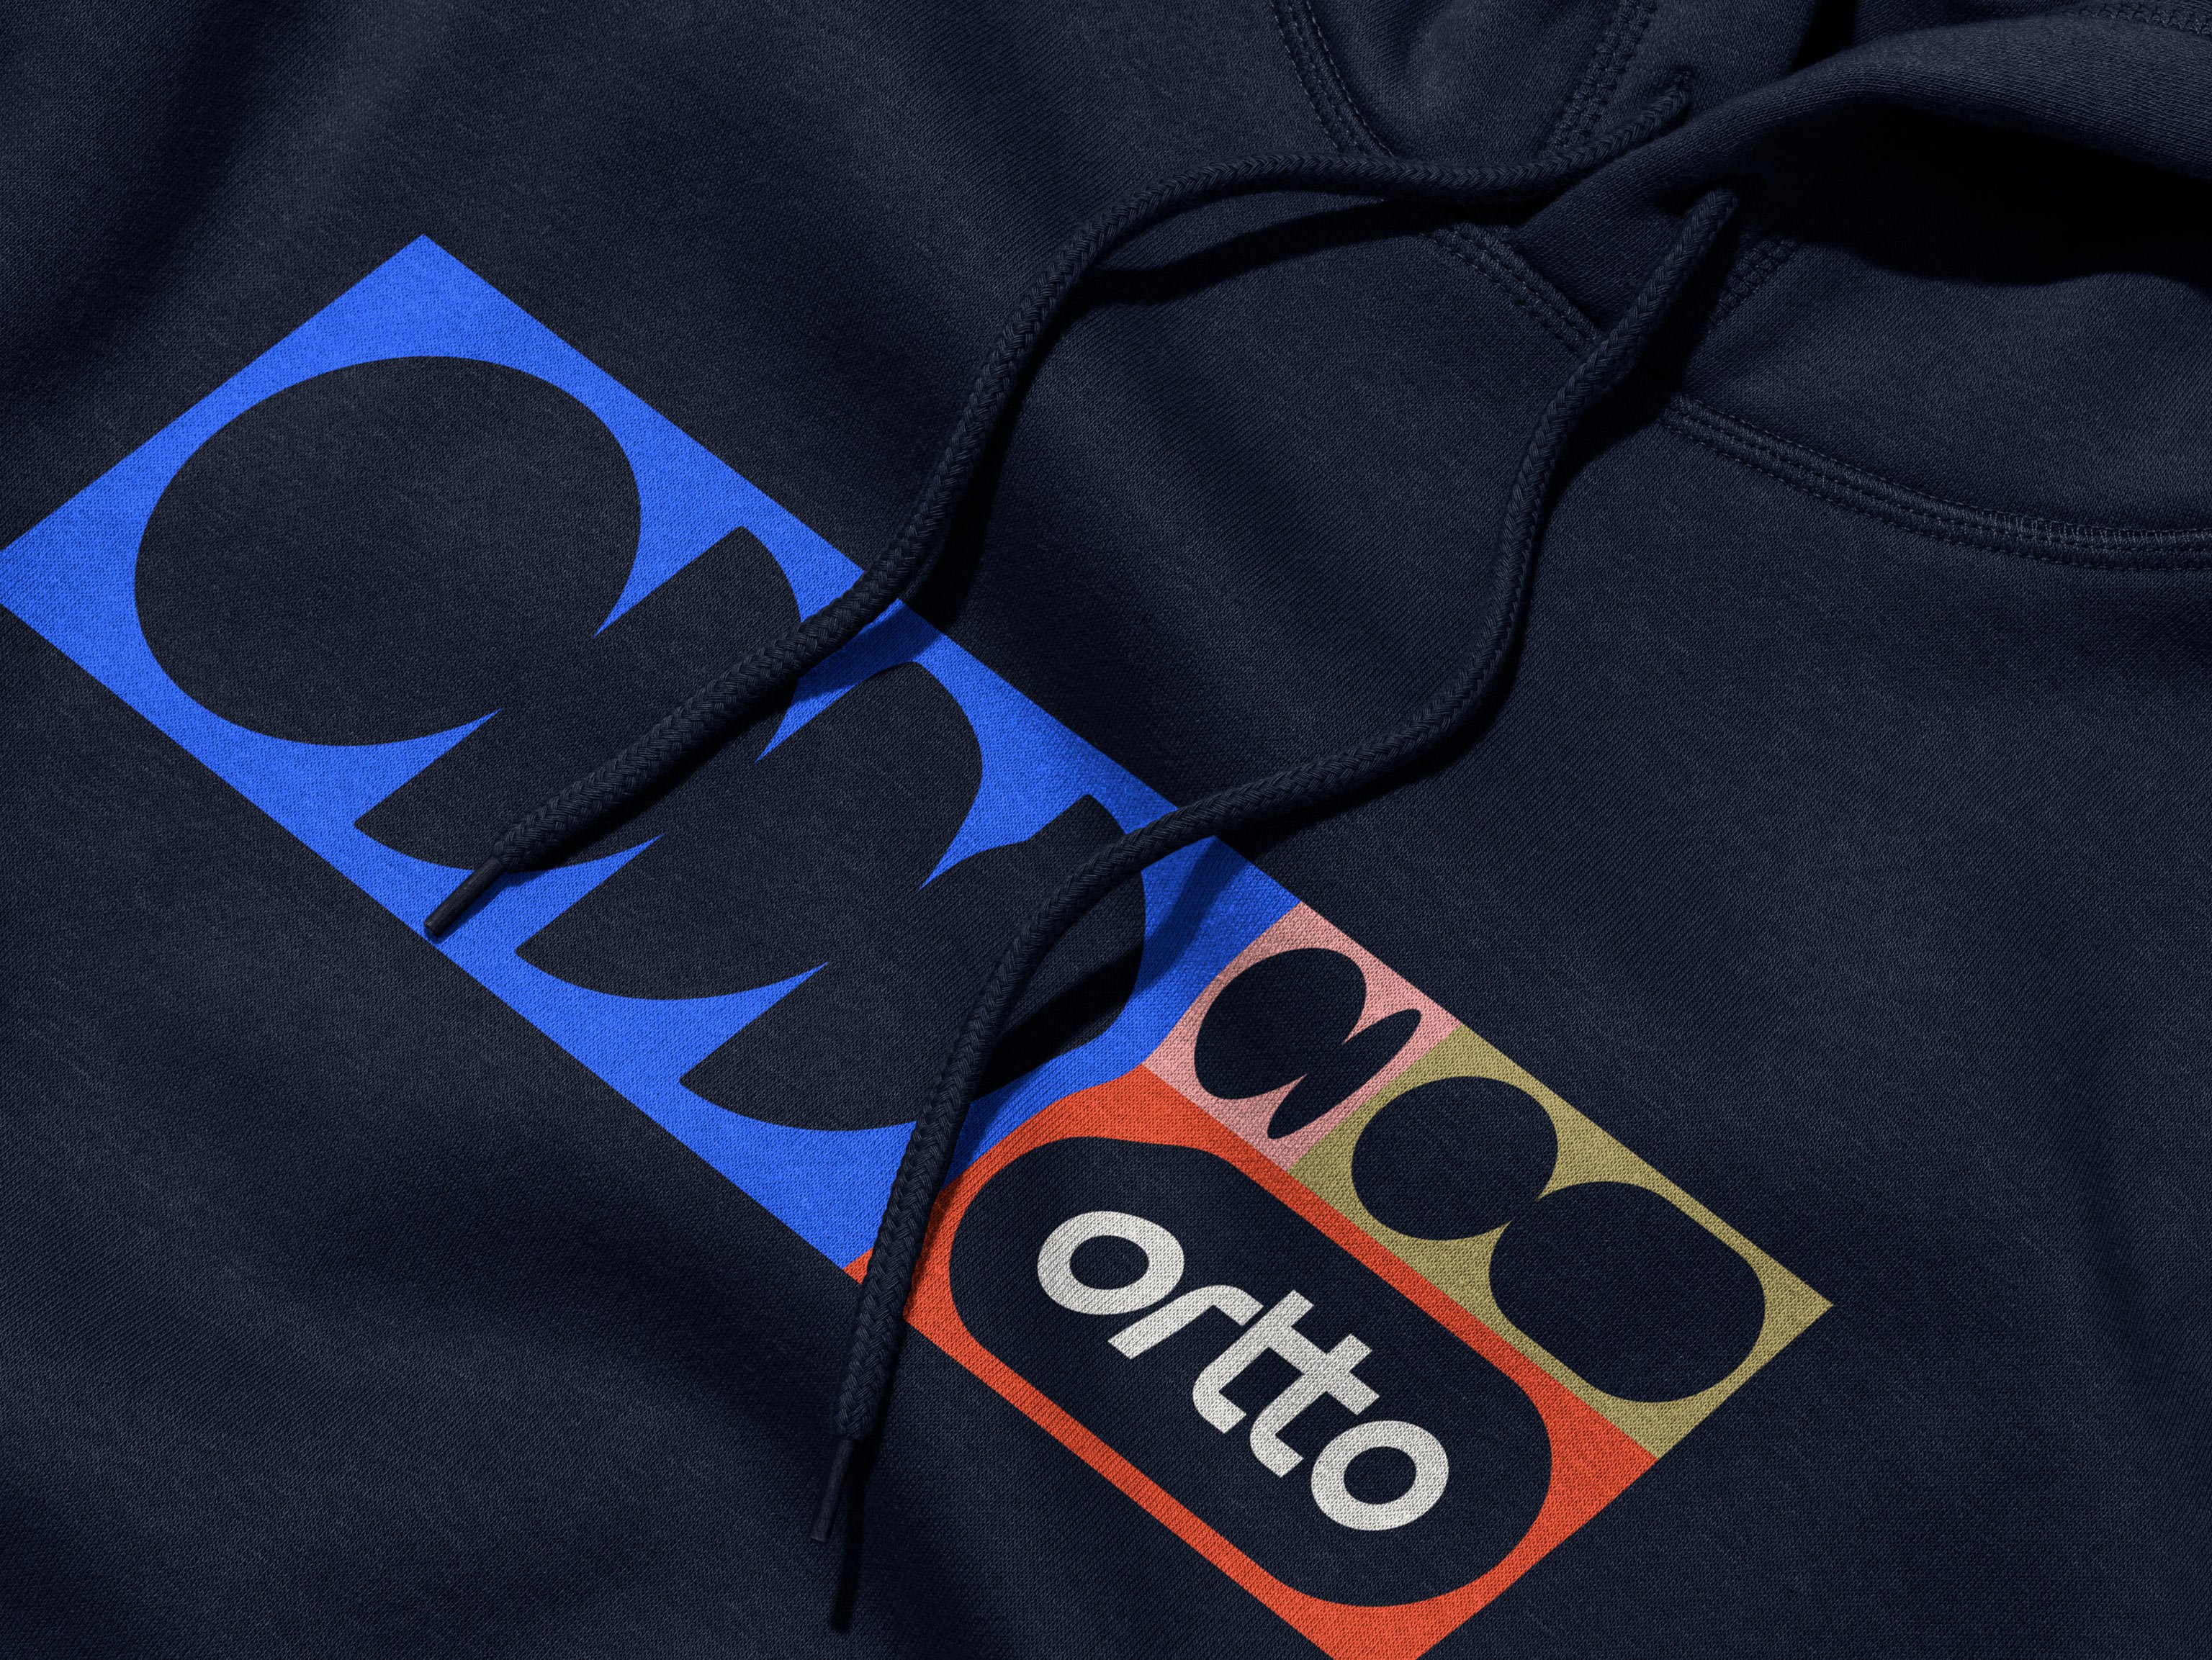 Nieuw logo, merkidentiteit en merkhoodie voor bedrijf Ortto op het gebied van automatisering, analyse en klantreizen, ontworpen door Christopher Doyle & Co